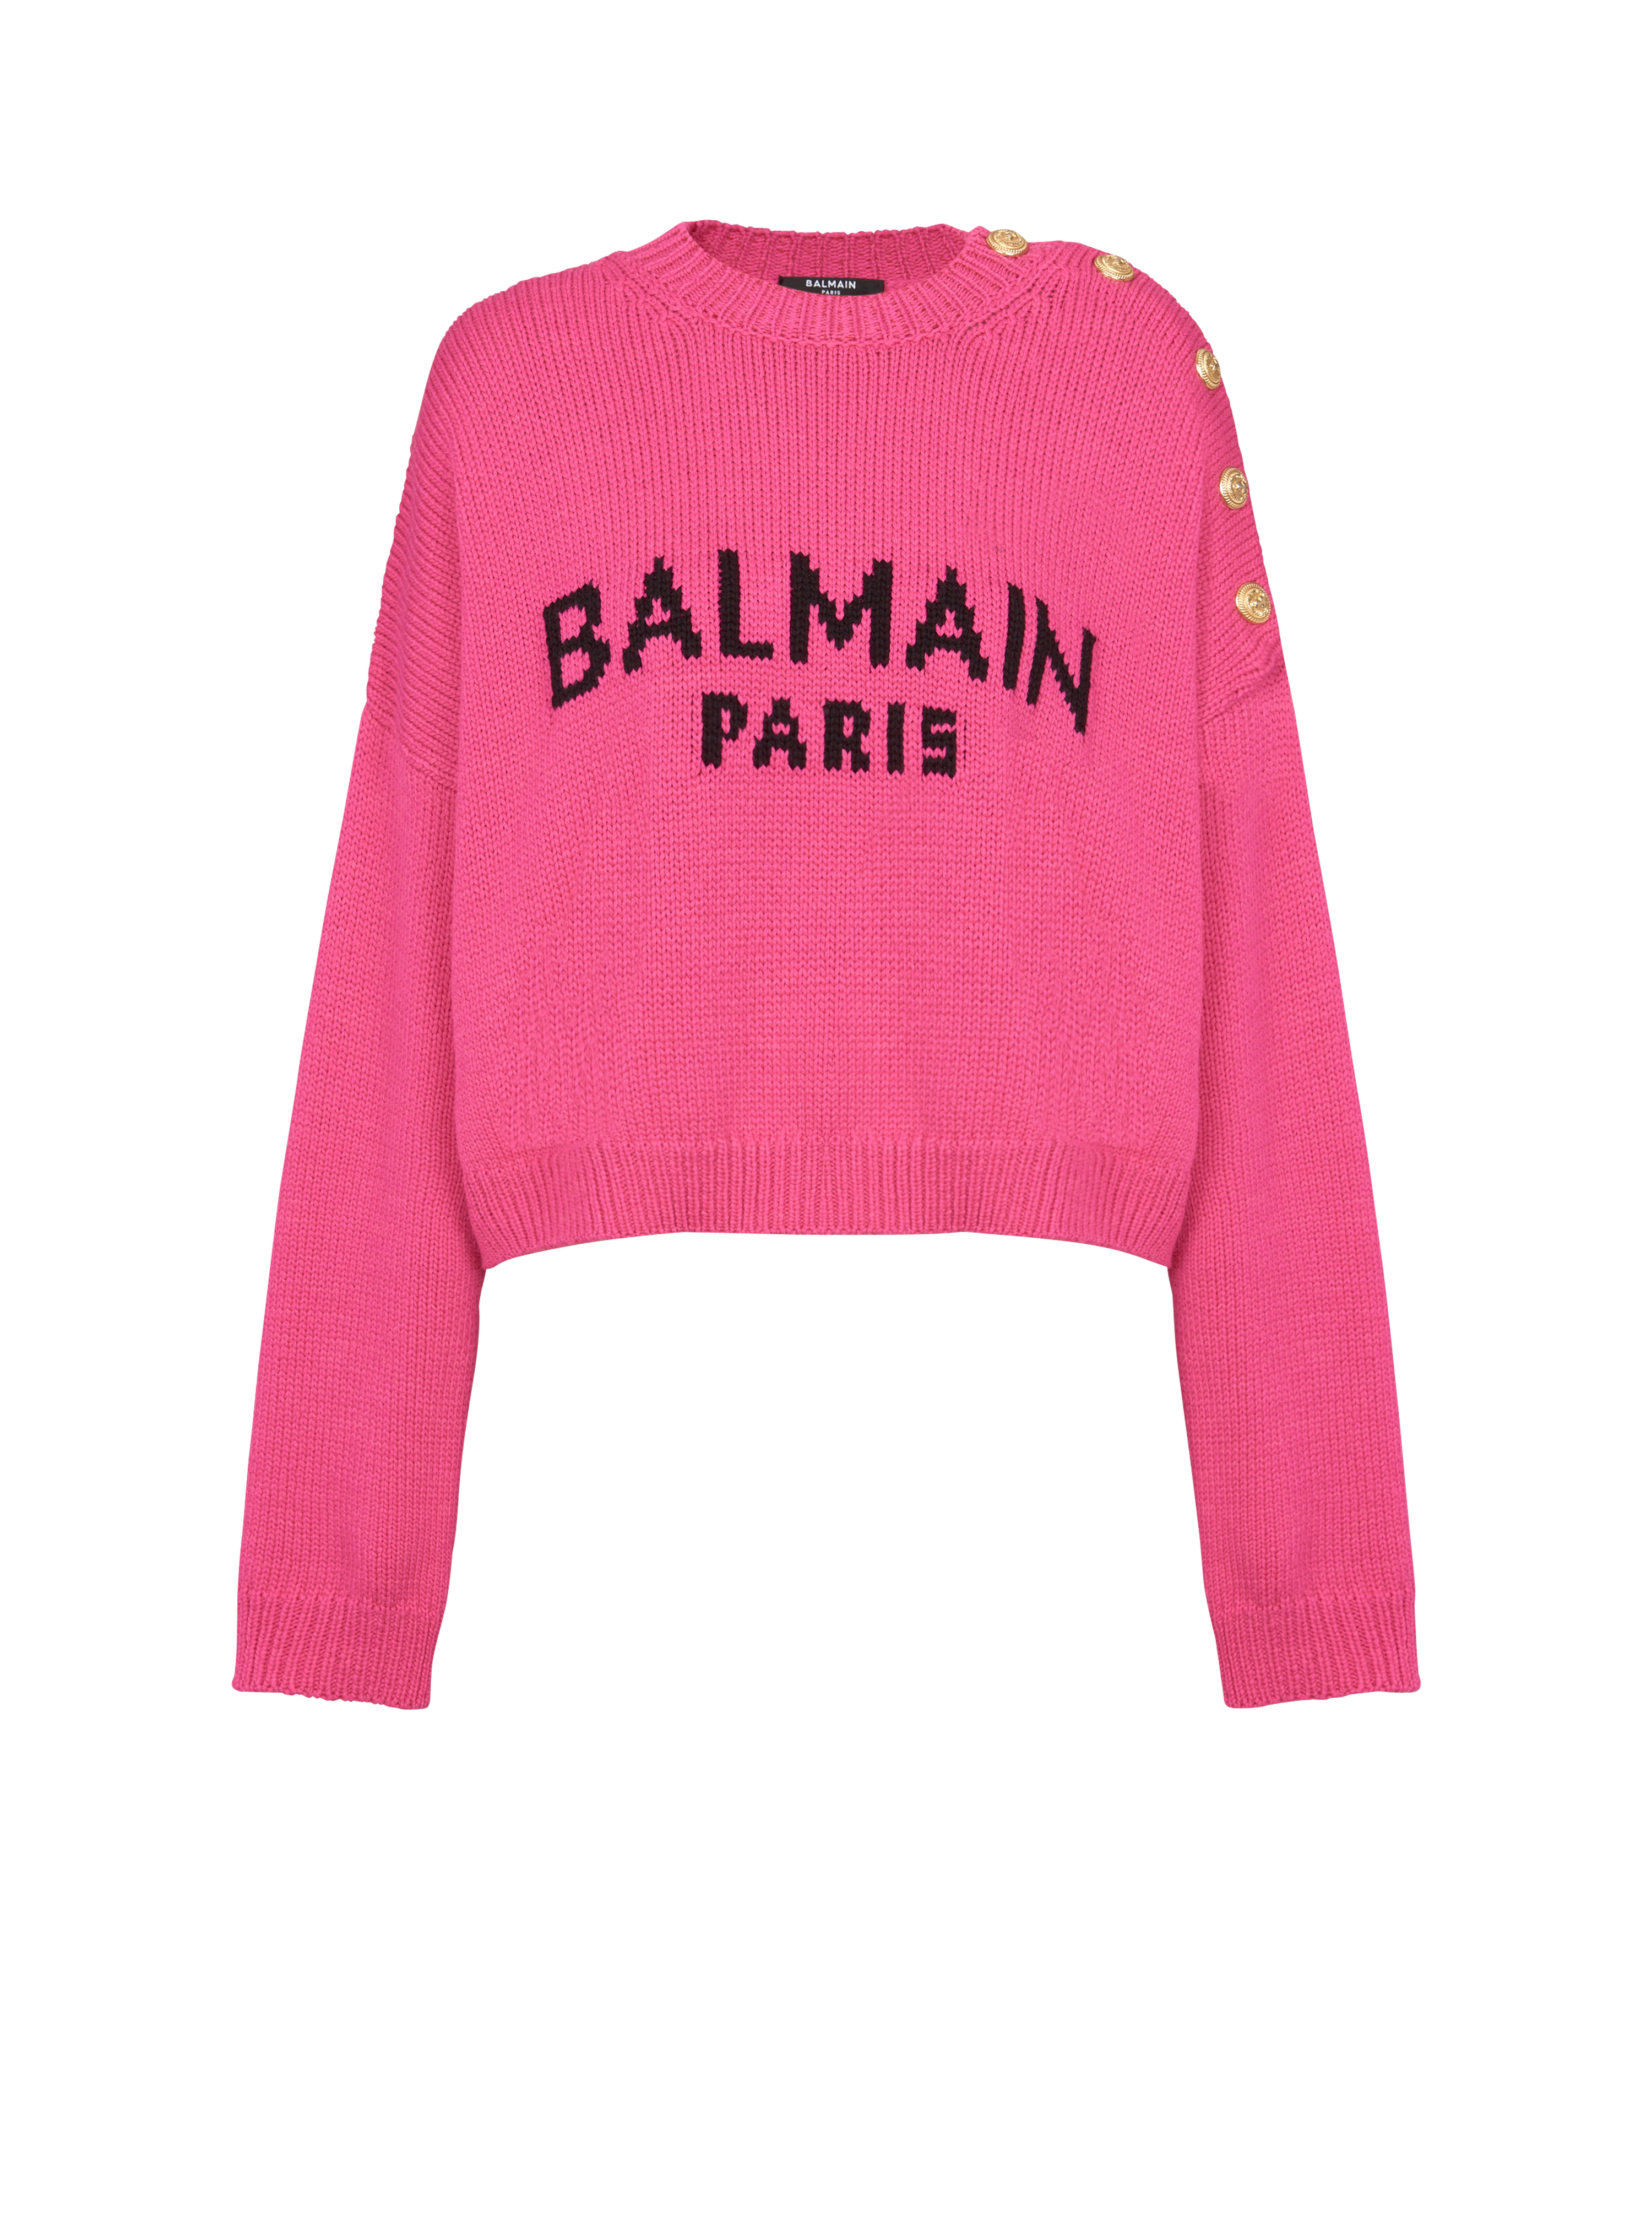 Balmain logo cropped knit jumper, pink